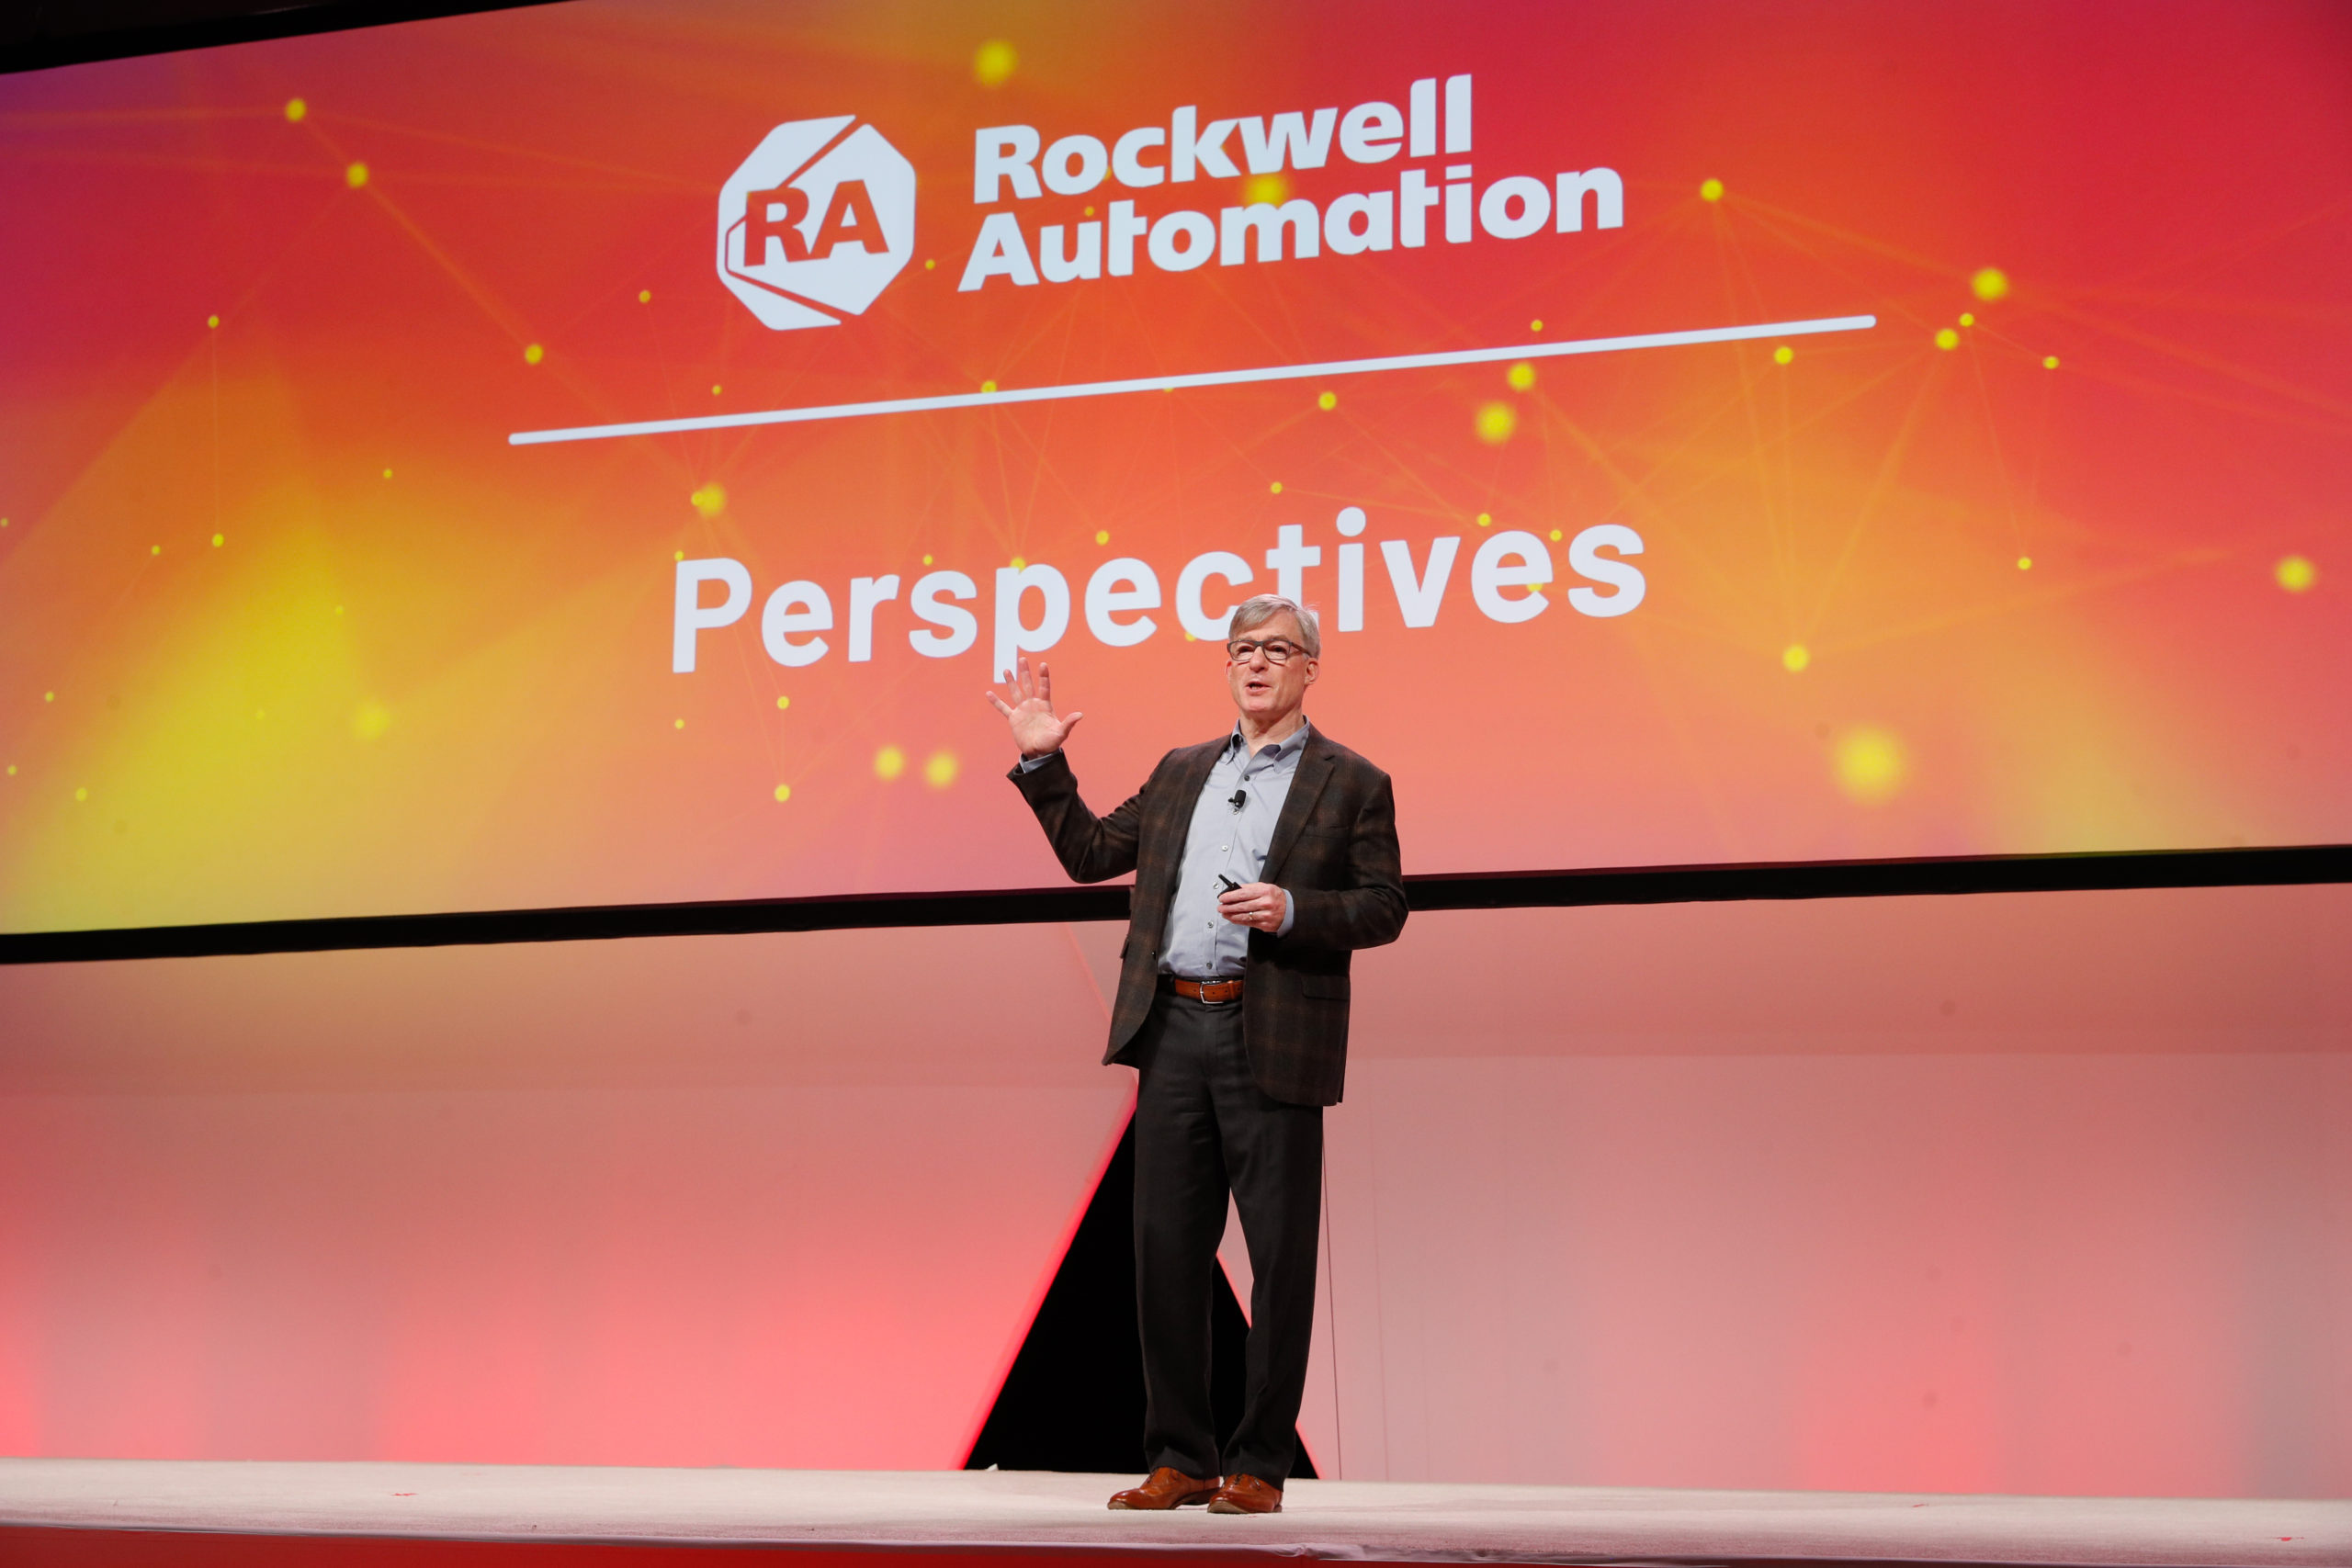 Rockwell Automation công bố quan hệ đối tác chiến lược tại Hội chợ Tự động hóa 2019